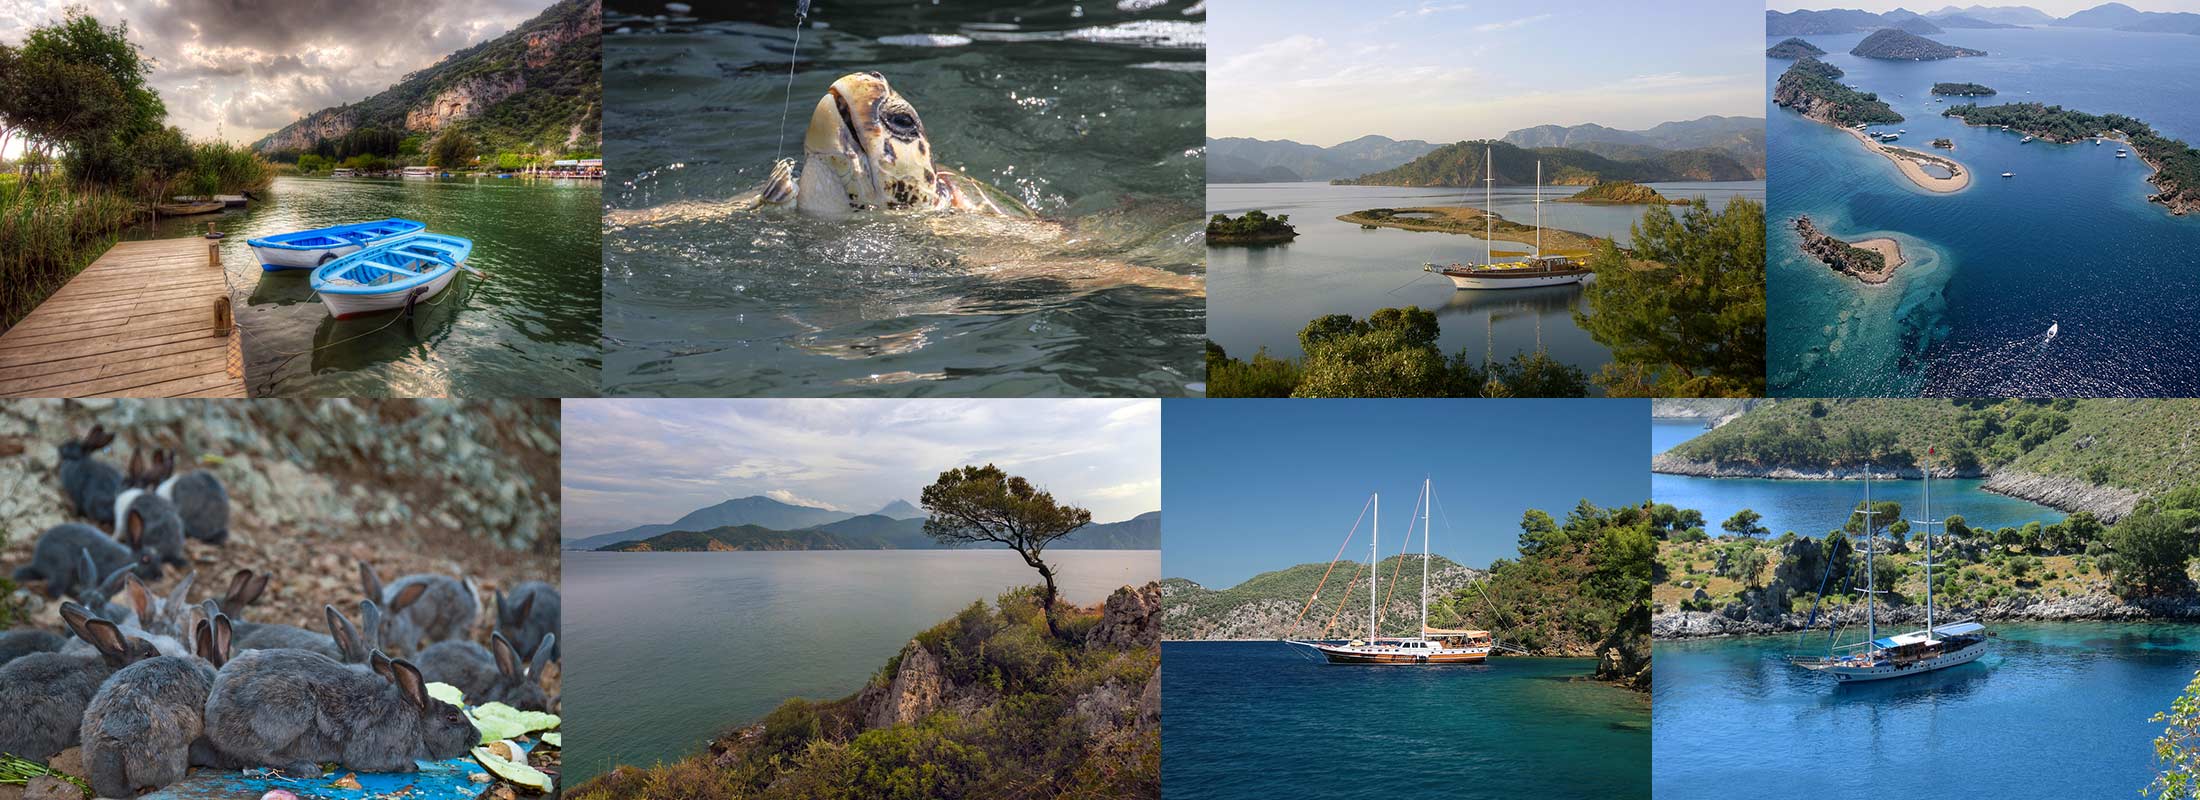 turkey-marmaris-fethiye-red-island-blue-gulet-cruise